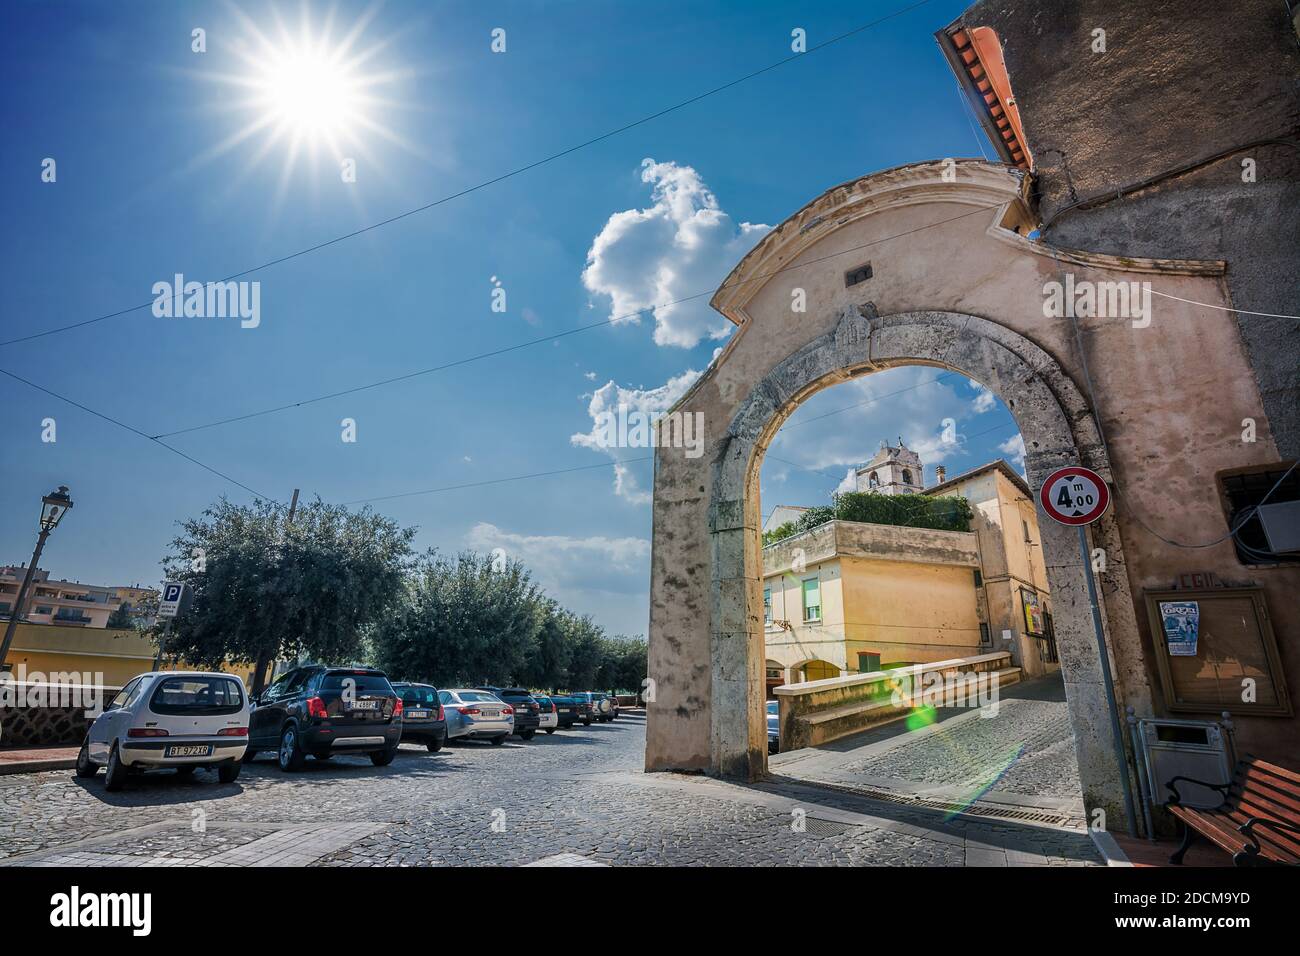 Montalto di Castro, Italien - 18. September 2020: Eingangstür in der antiken Gegend von Montalto di Castro (Italien) Stockfoto